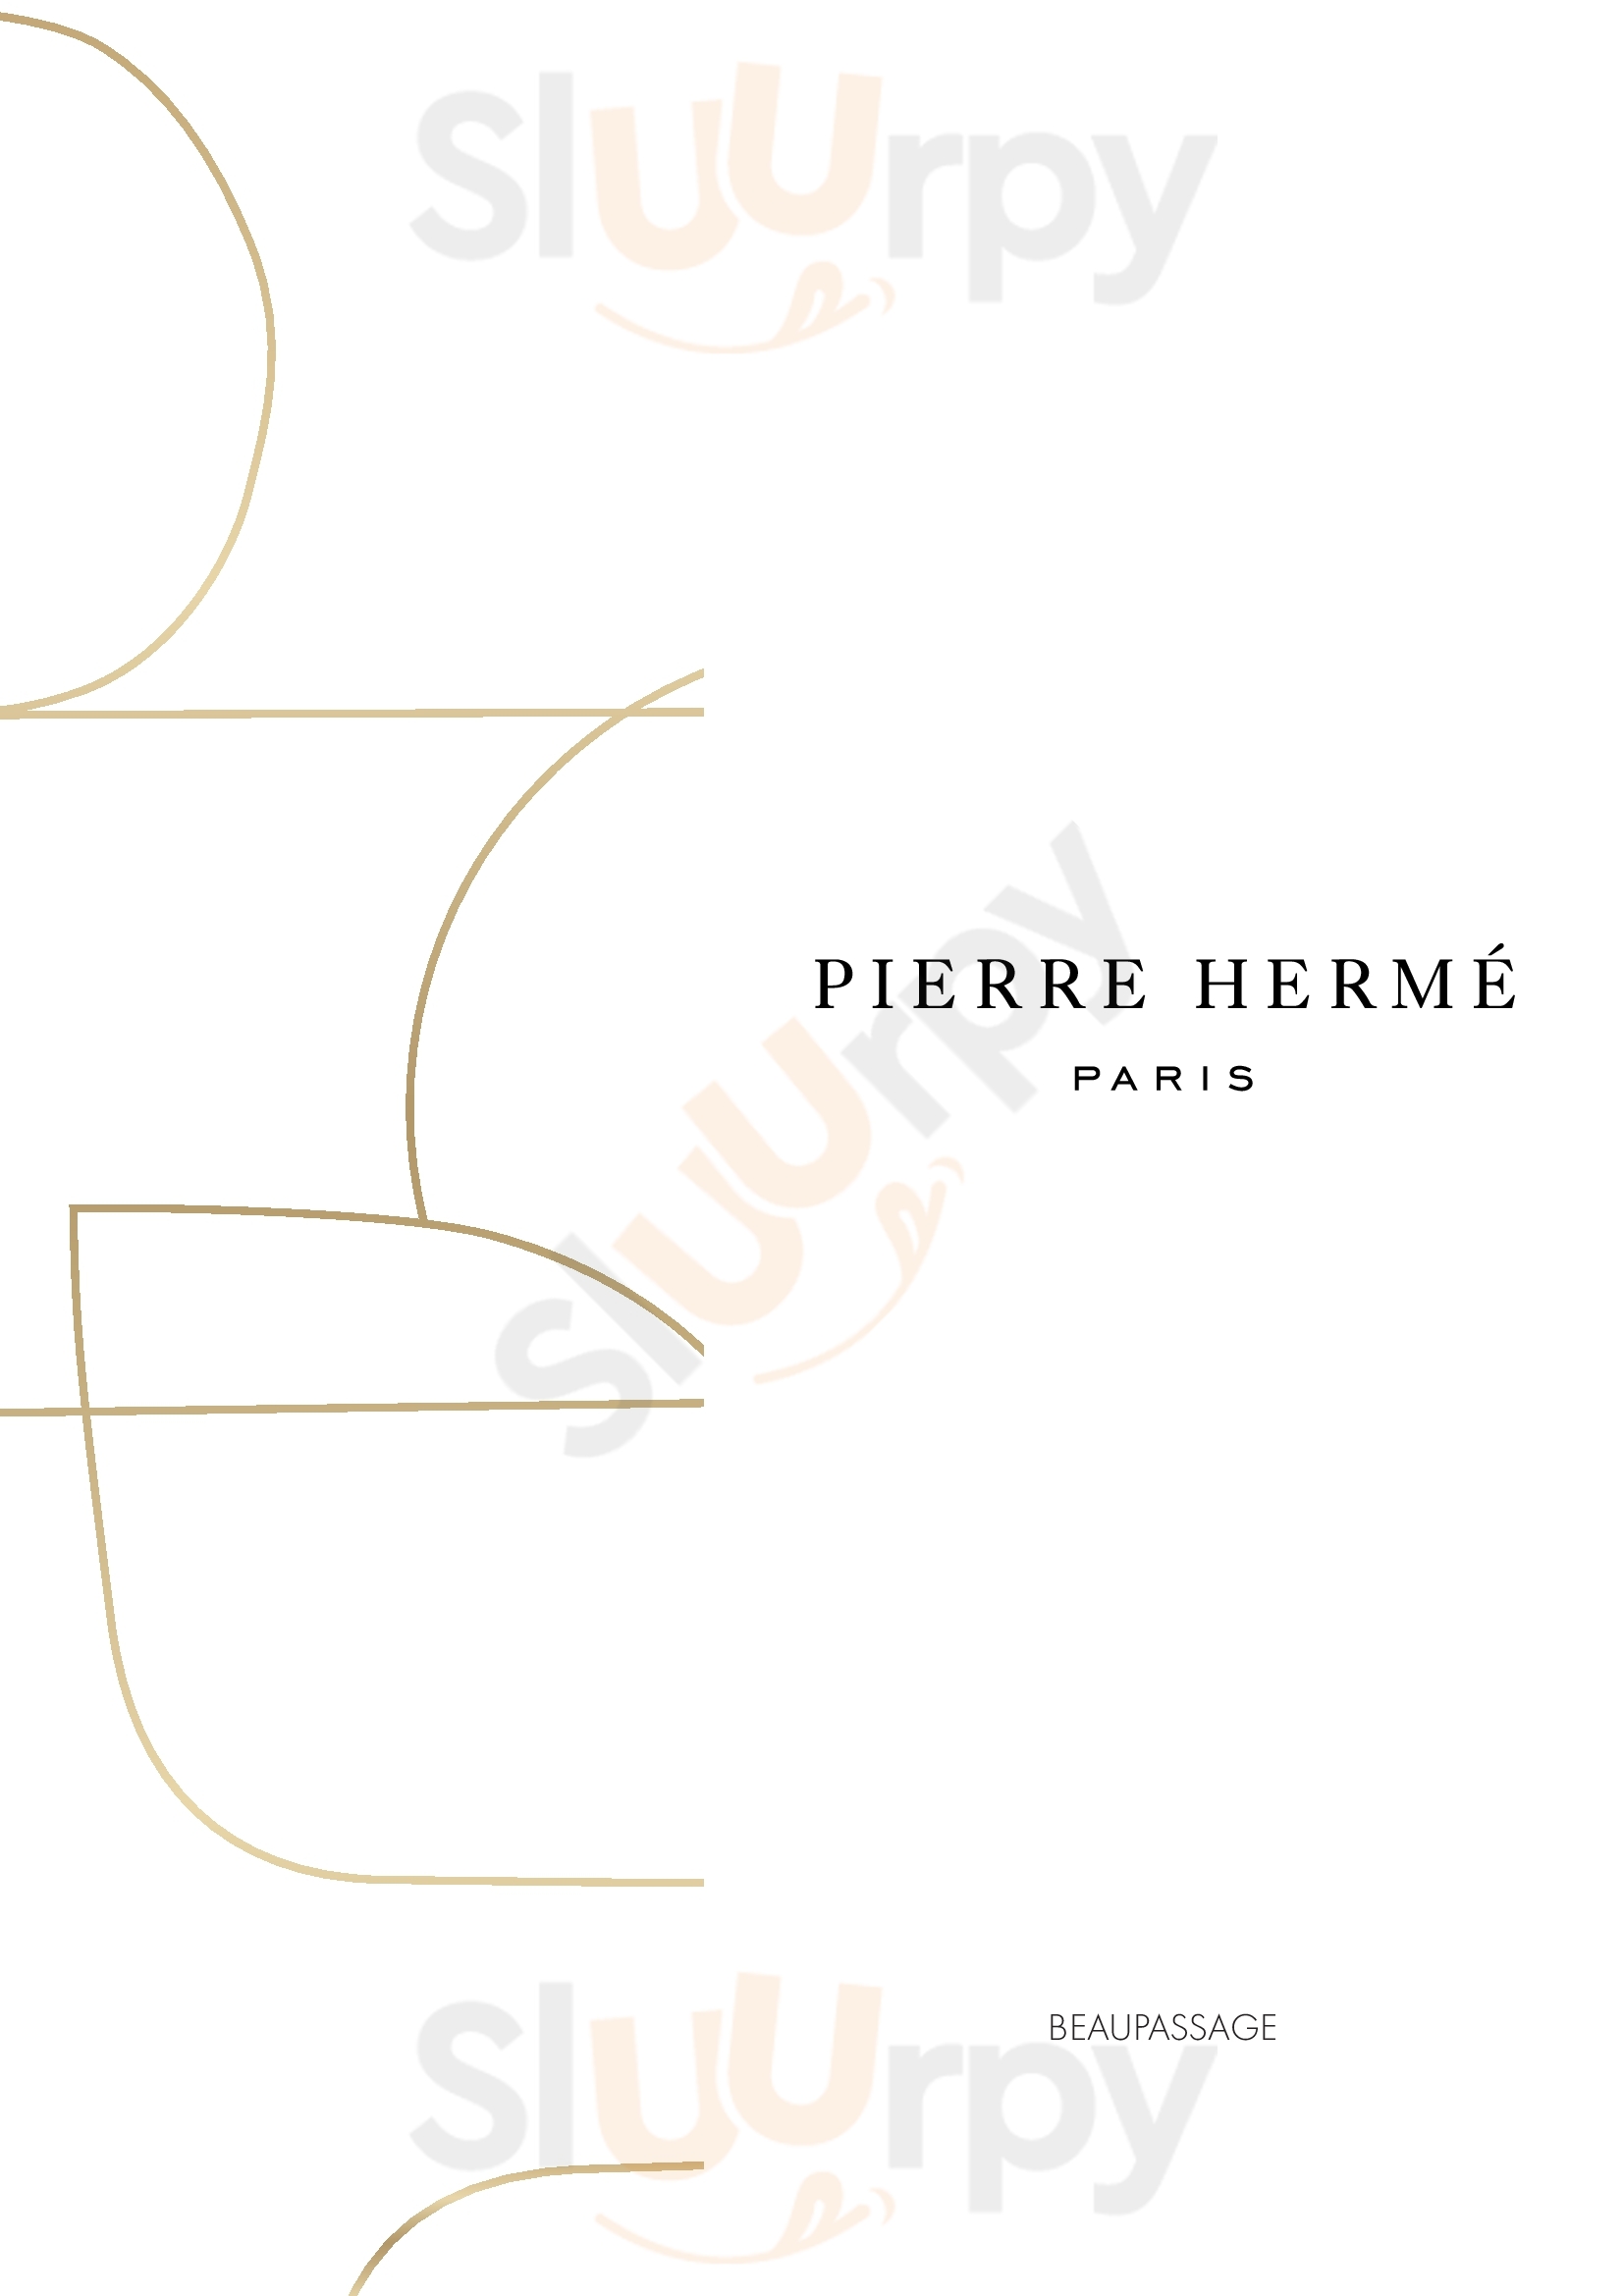 Pierre Hermé Marais Paris Iv Paris Menu - 1